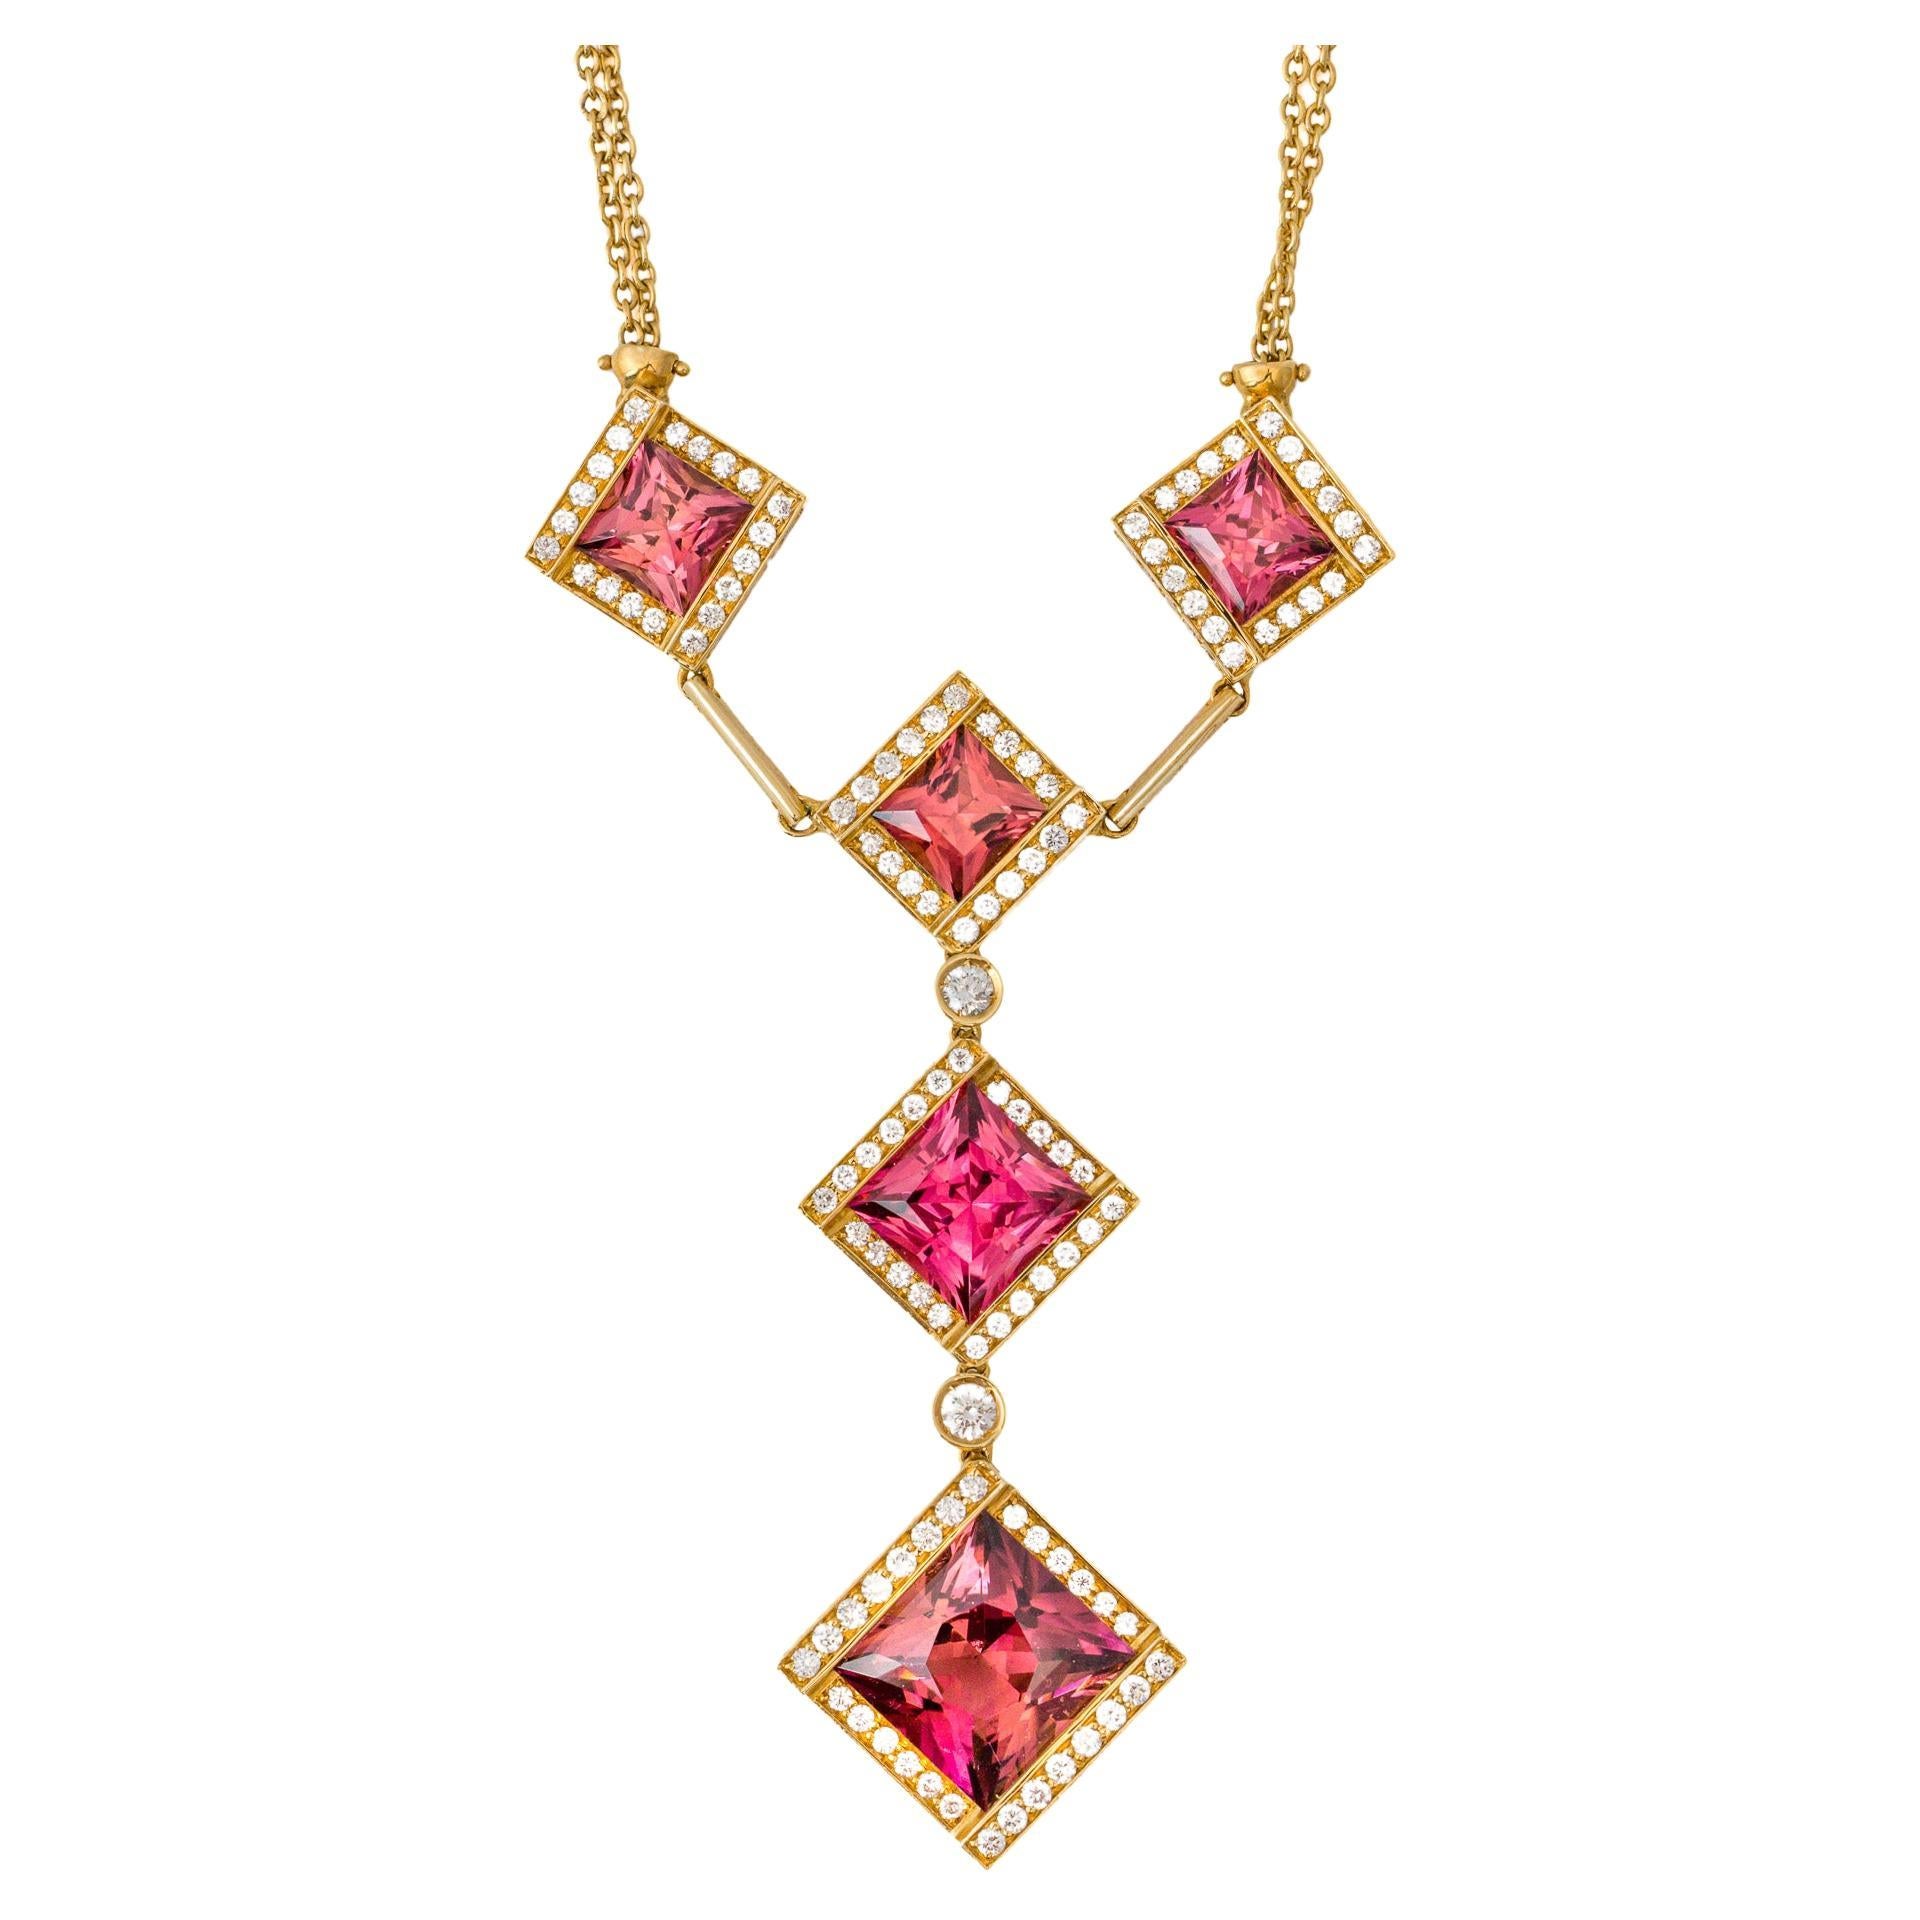 Collier carré en mouvement « Costis » avec tourmalines roses de 11,13 carats et diamants